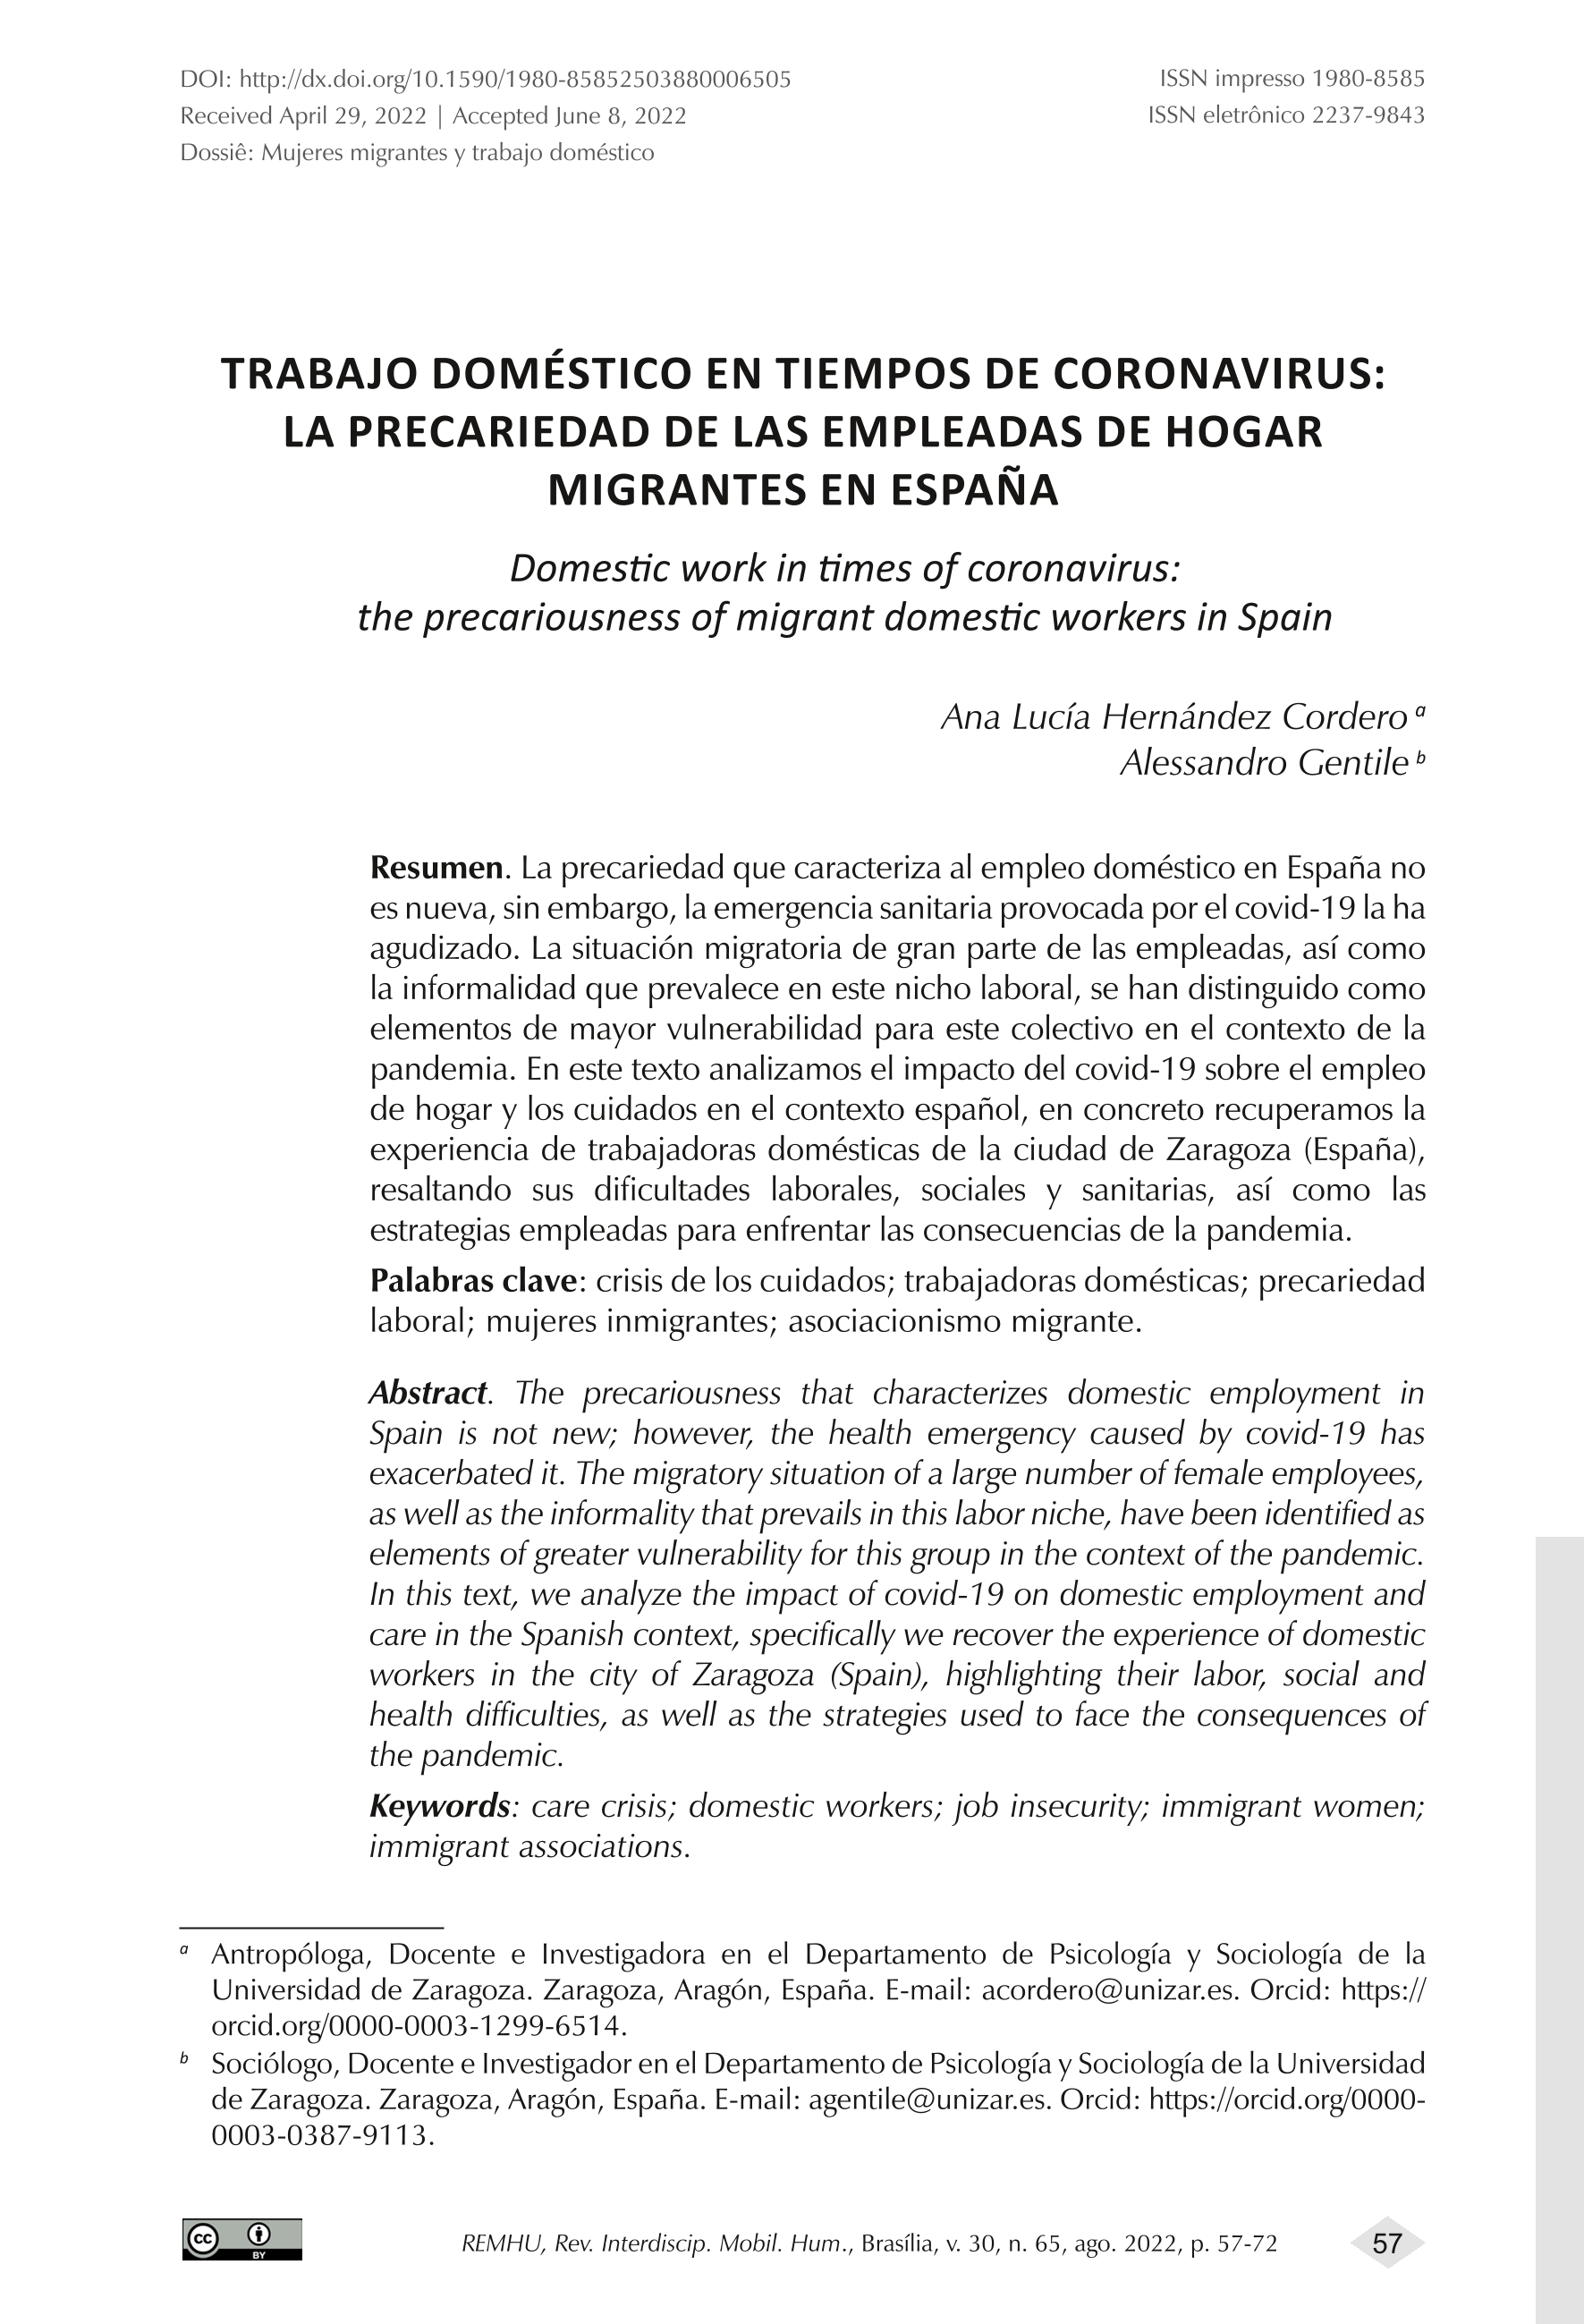 Trabajo doméstico en tiempos de coronavirus: la precariedad de las empleadas de hogar migrantes en España